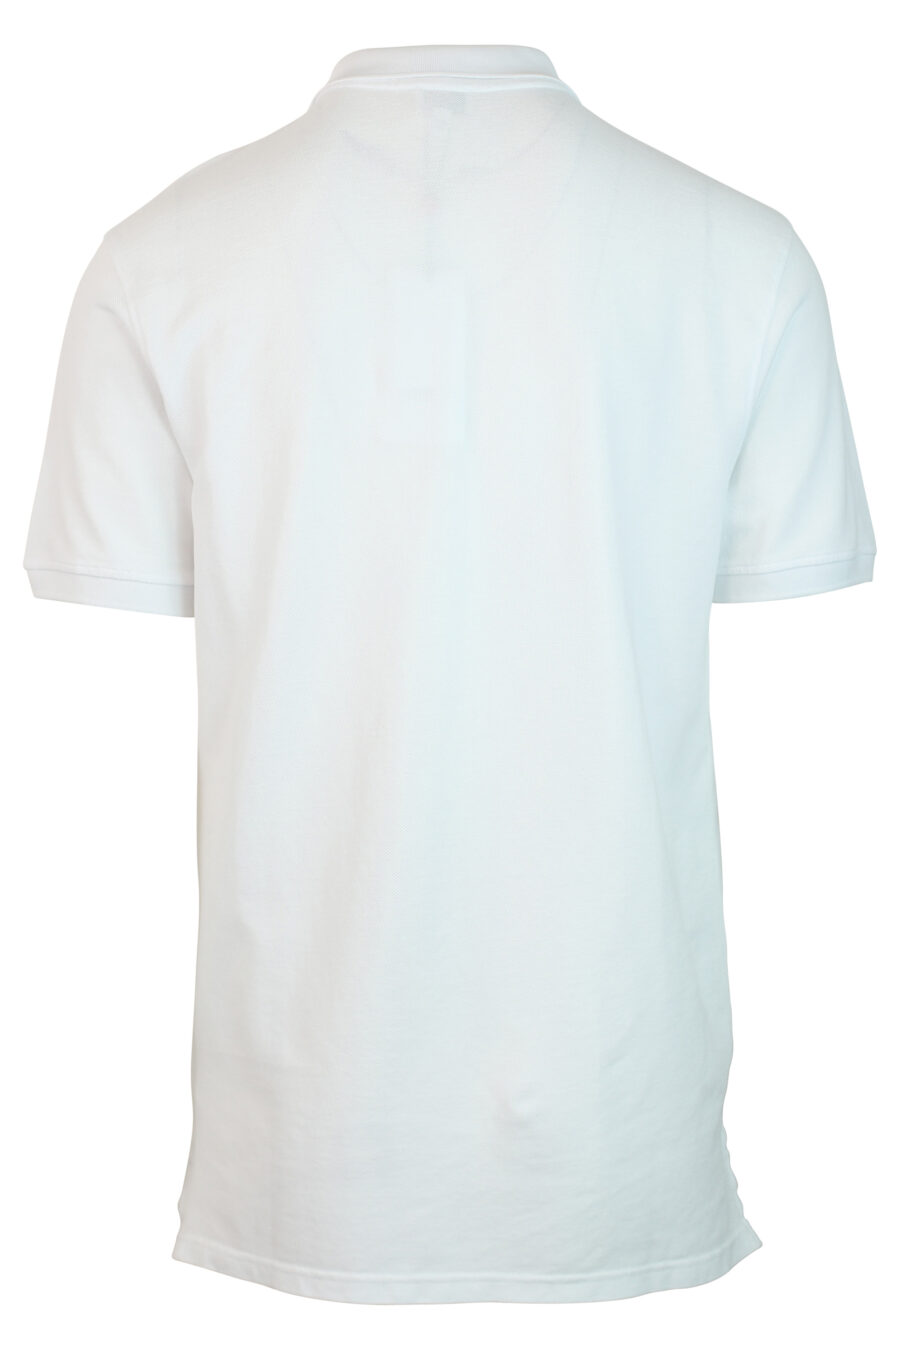 Weißes Poloshirt mit Minilogue "paris classic" grün - 3612230468825 2